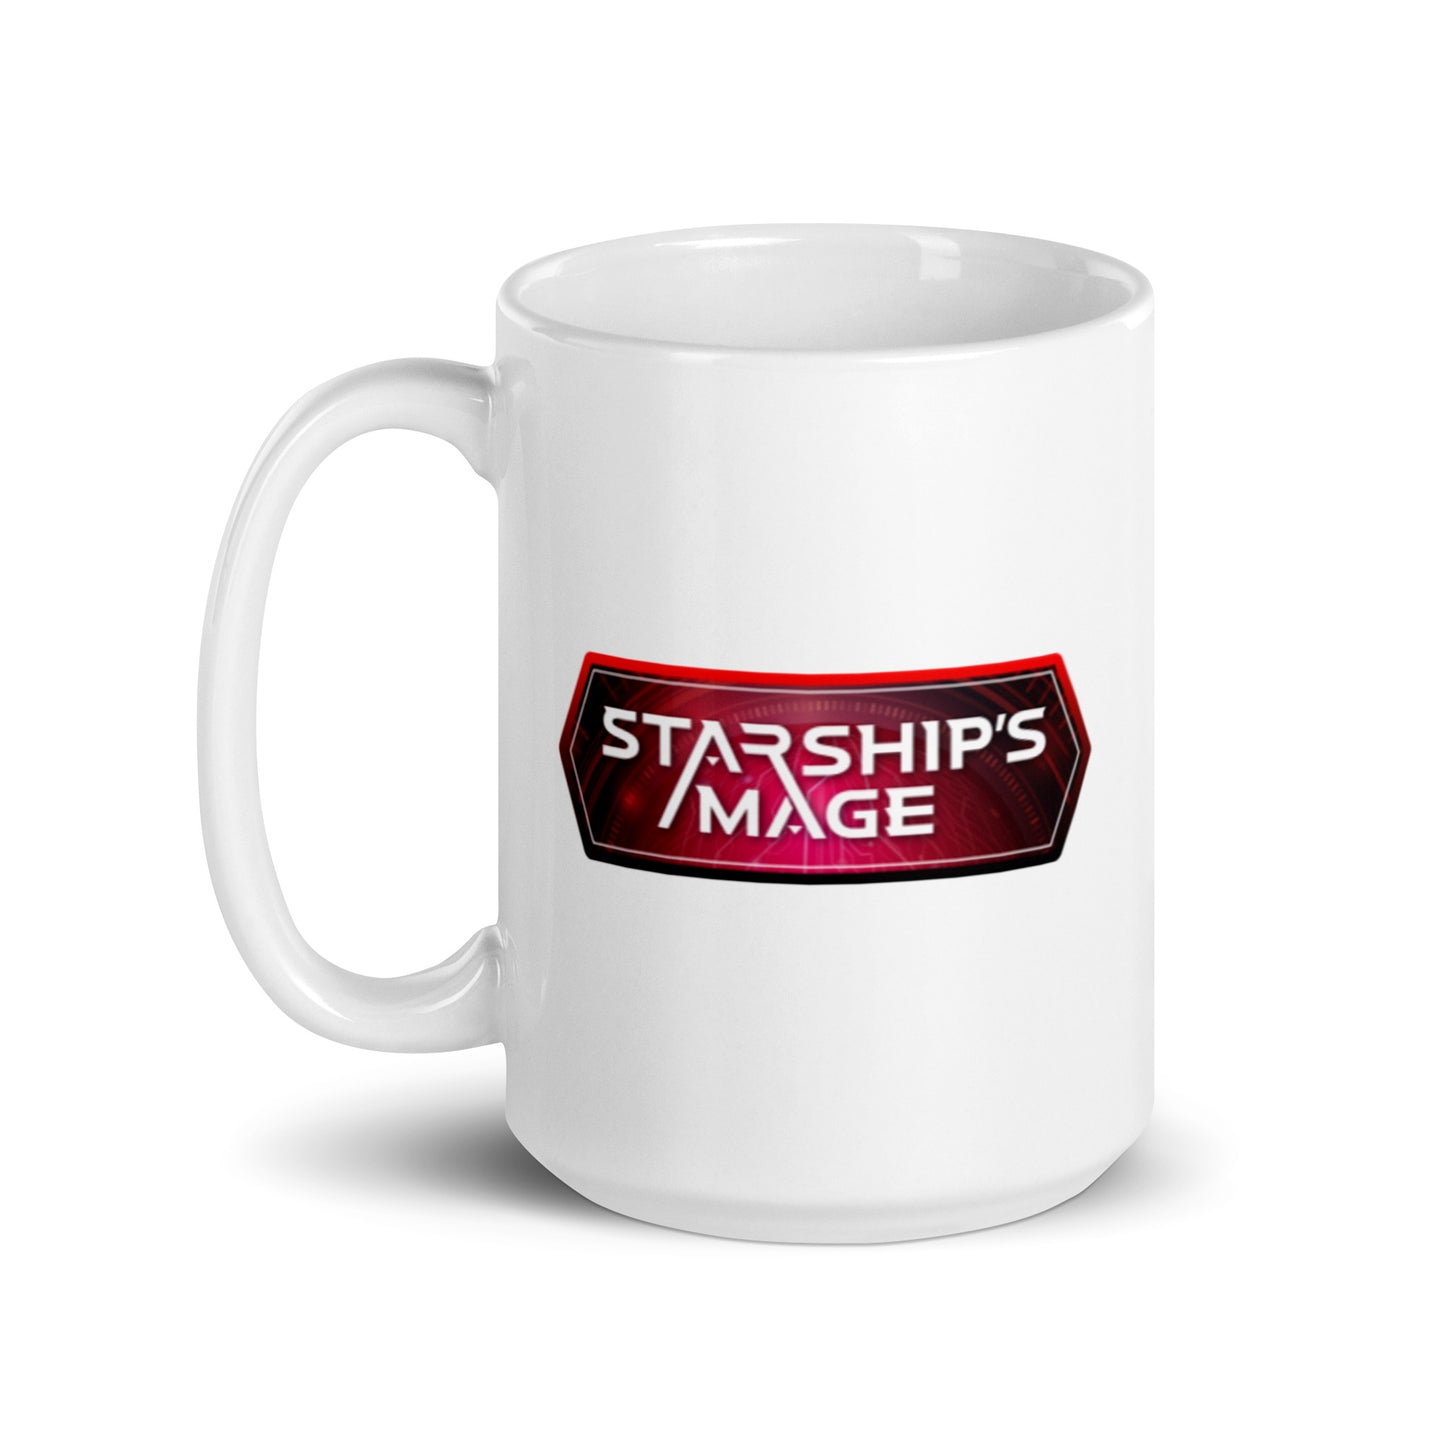 Protectorate of Mars mug